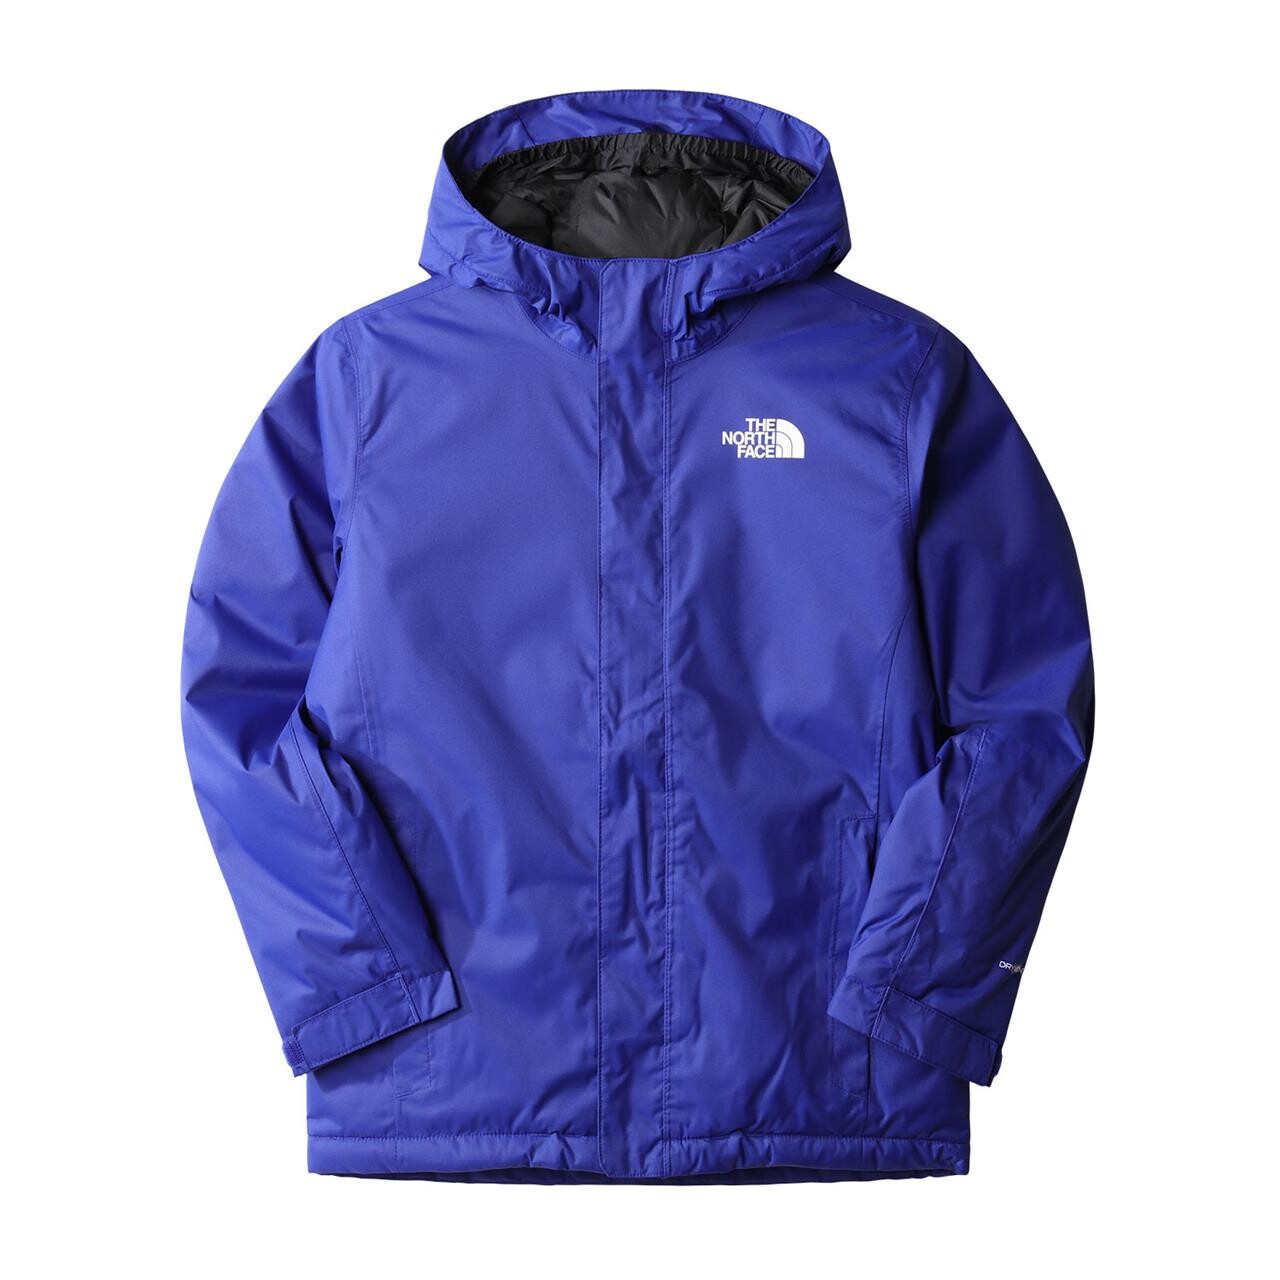 Billede af The North Face Teens Snowquest Jacket (Blå (LAPIS BLUE) Large)